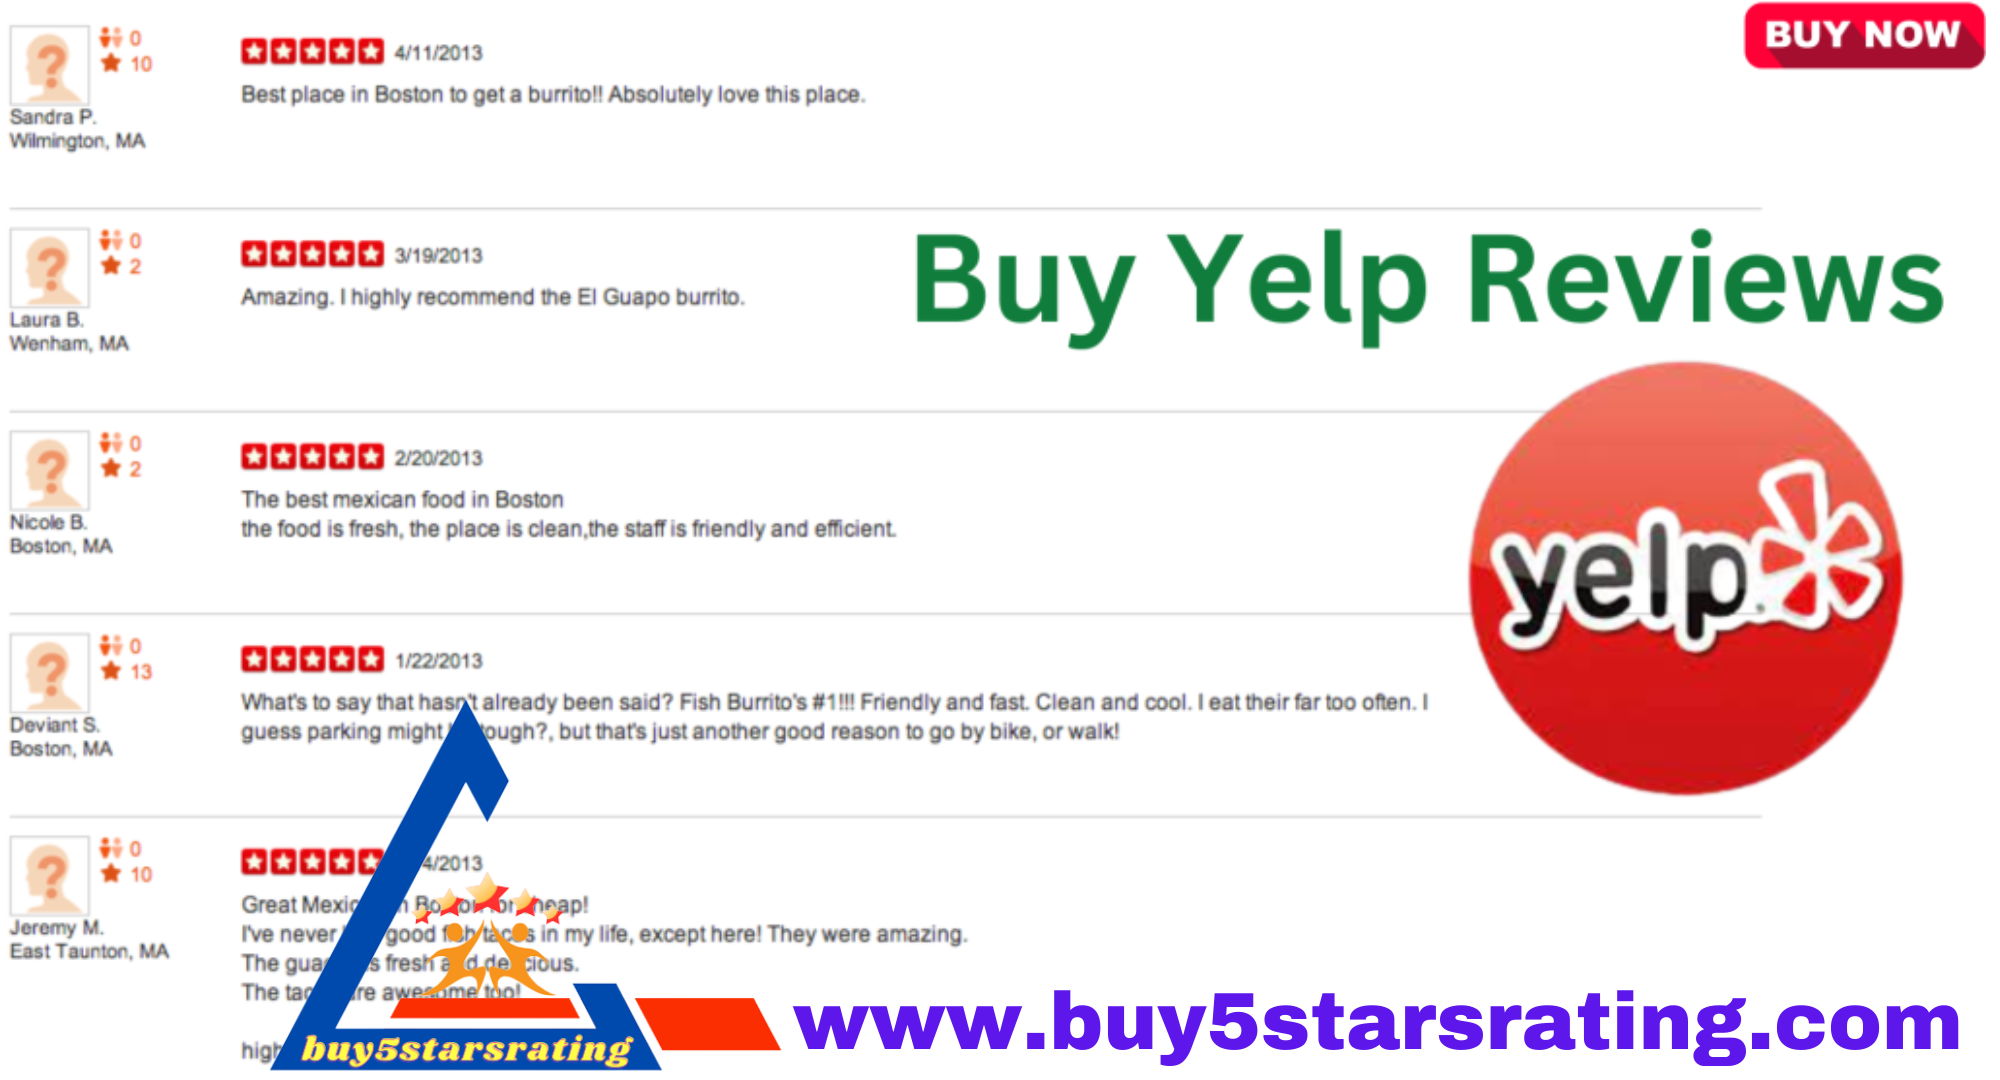 Buy Yelp Reviews
